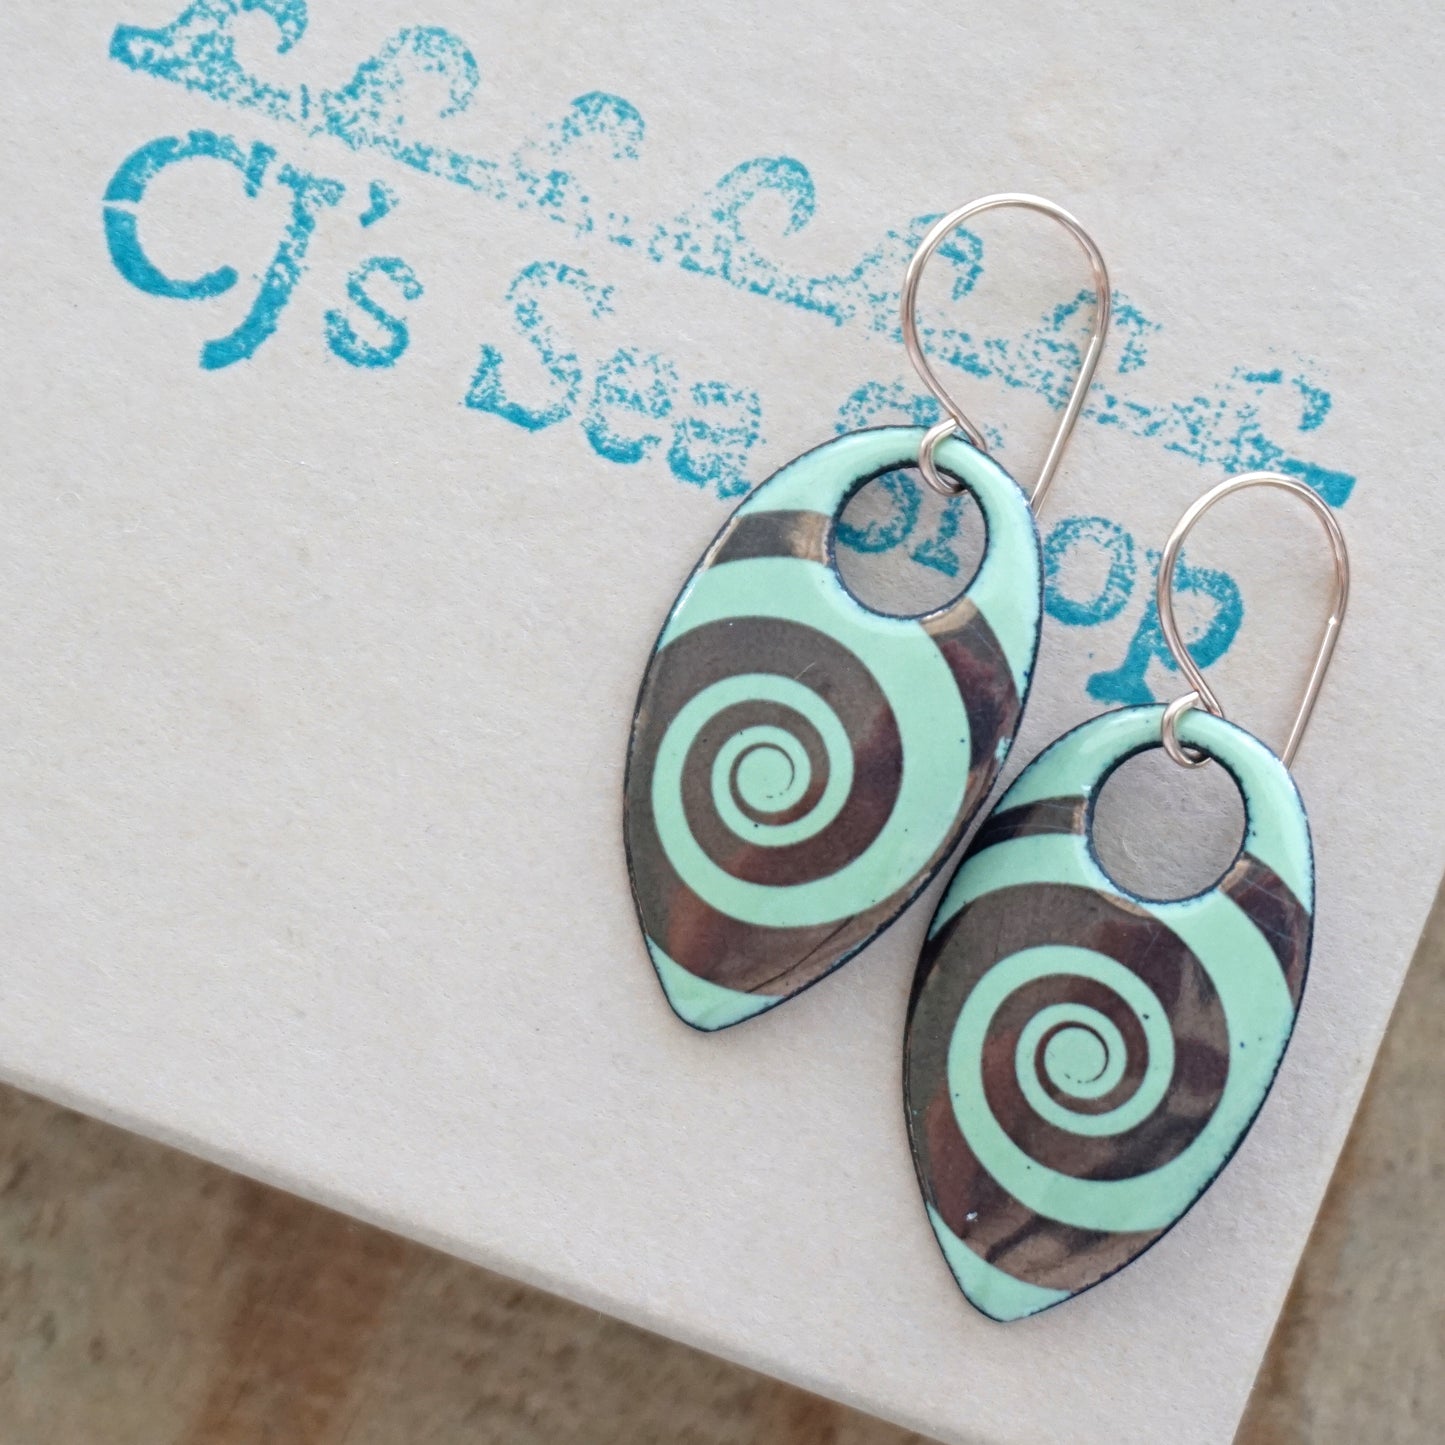 Copper Swirl Accents on Light Green Enamel Teardrop Earrings